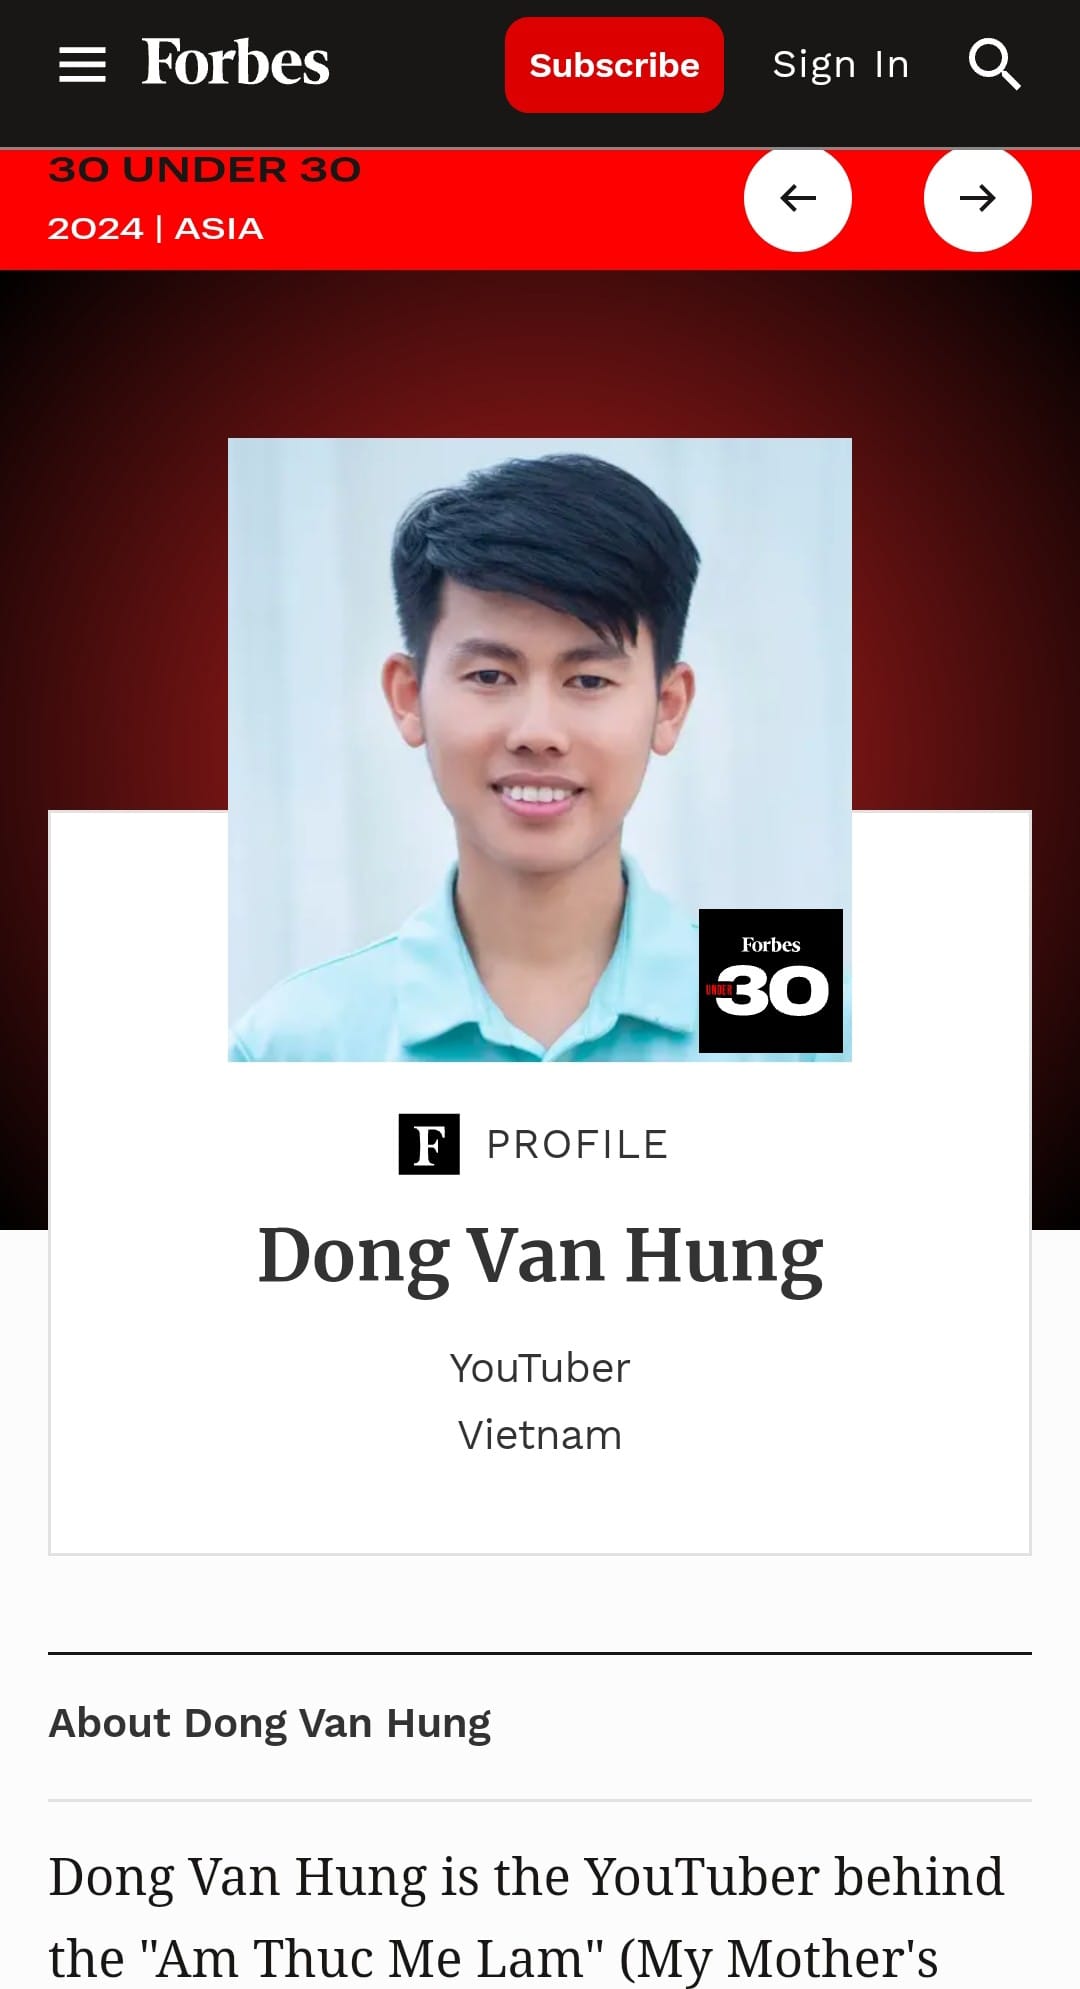 Chủ kênh 'Ẩm thực mẹ làm' Đồng Văn Hùng được Forbes vinh danh, là người Việt duy nhất trong hạng mục Media - ảnh 1